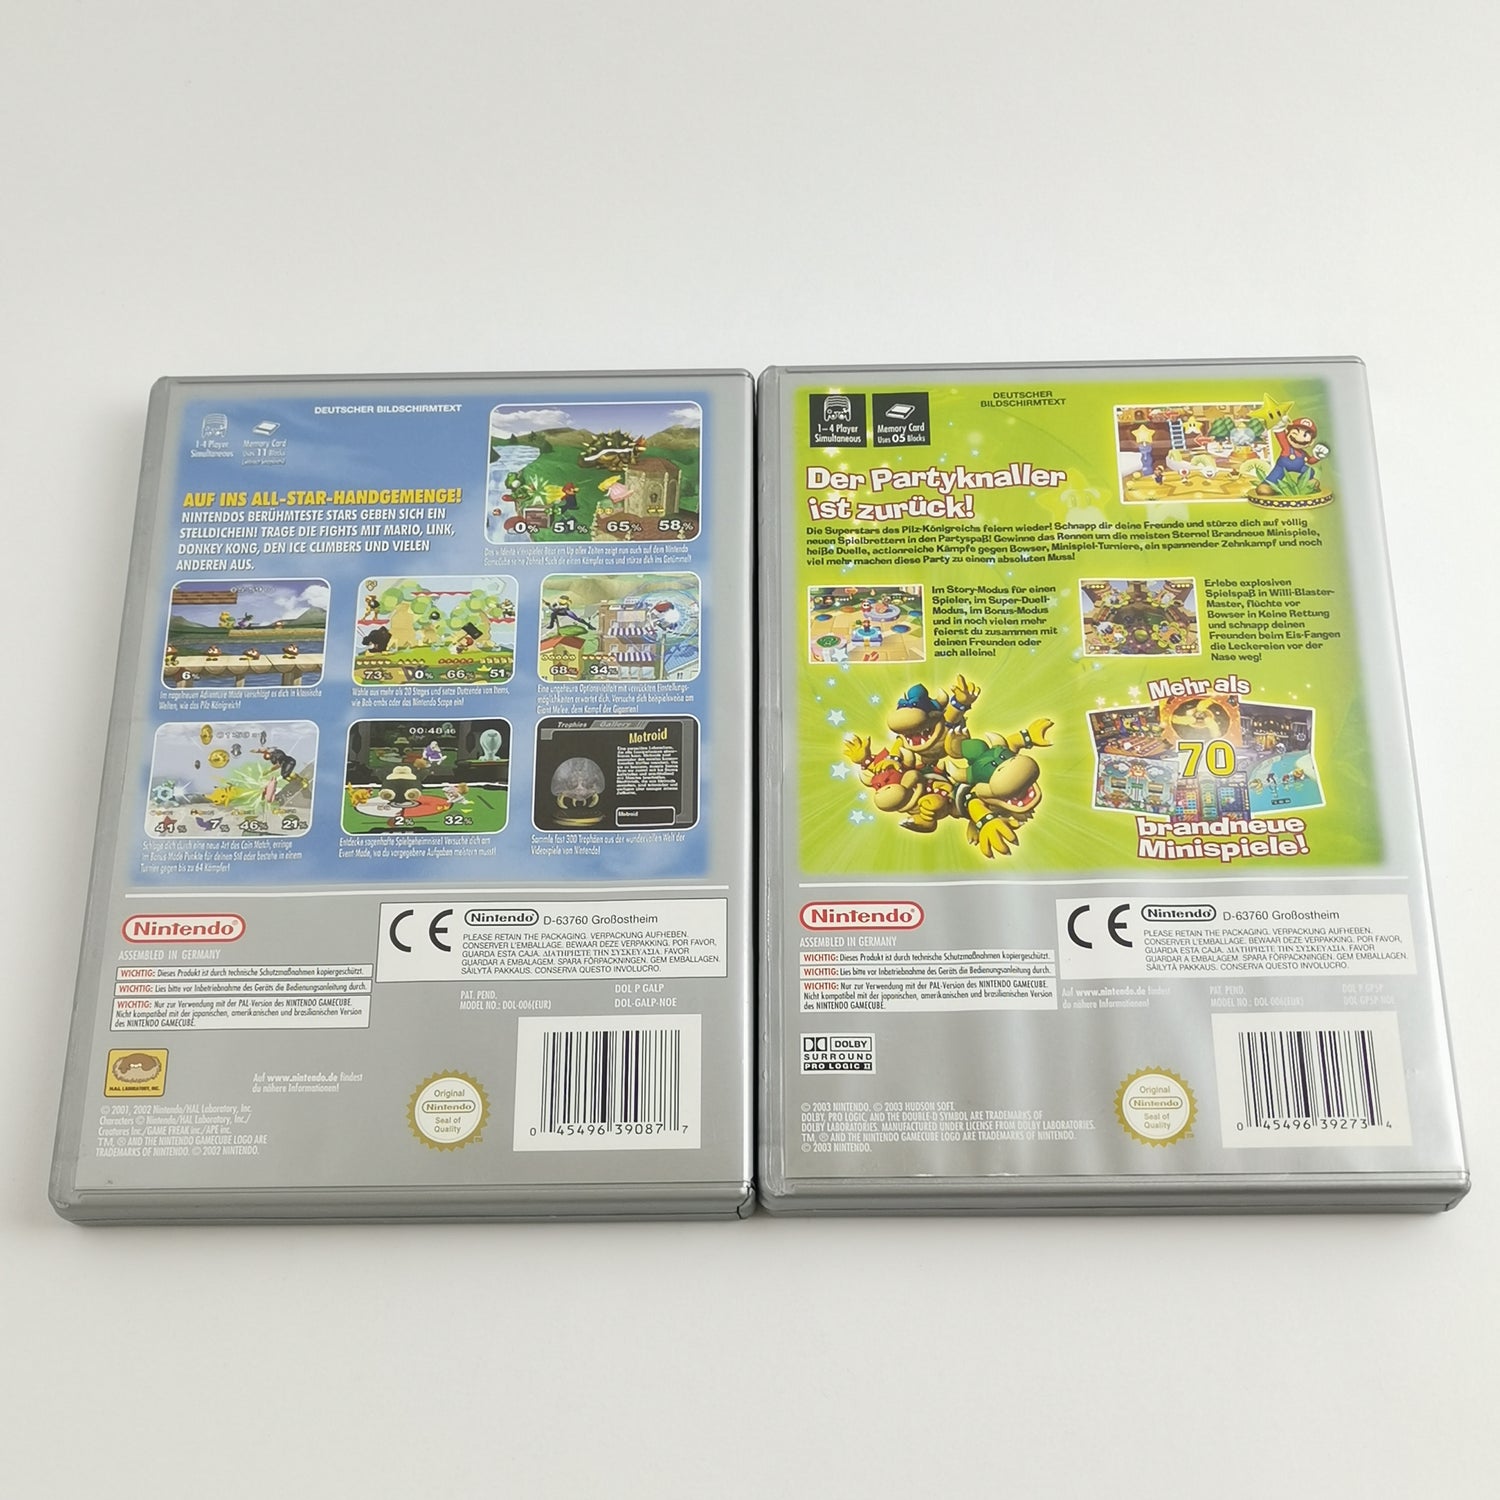 Nintendo Gamecube Games: Super Smash Bros. Melee & Mario Party 5 - OVP GC PAL